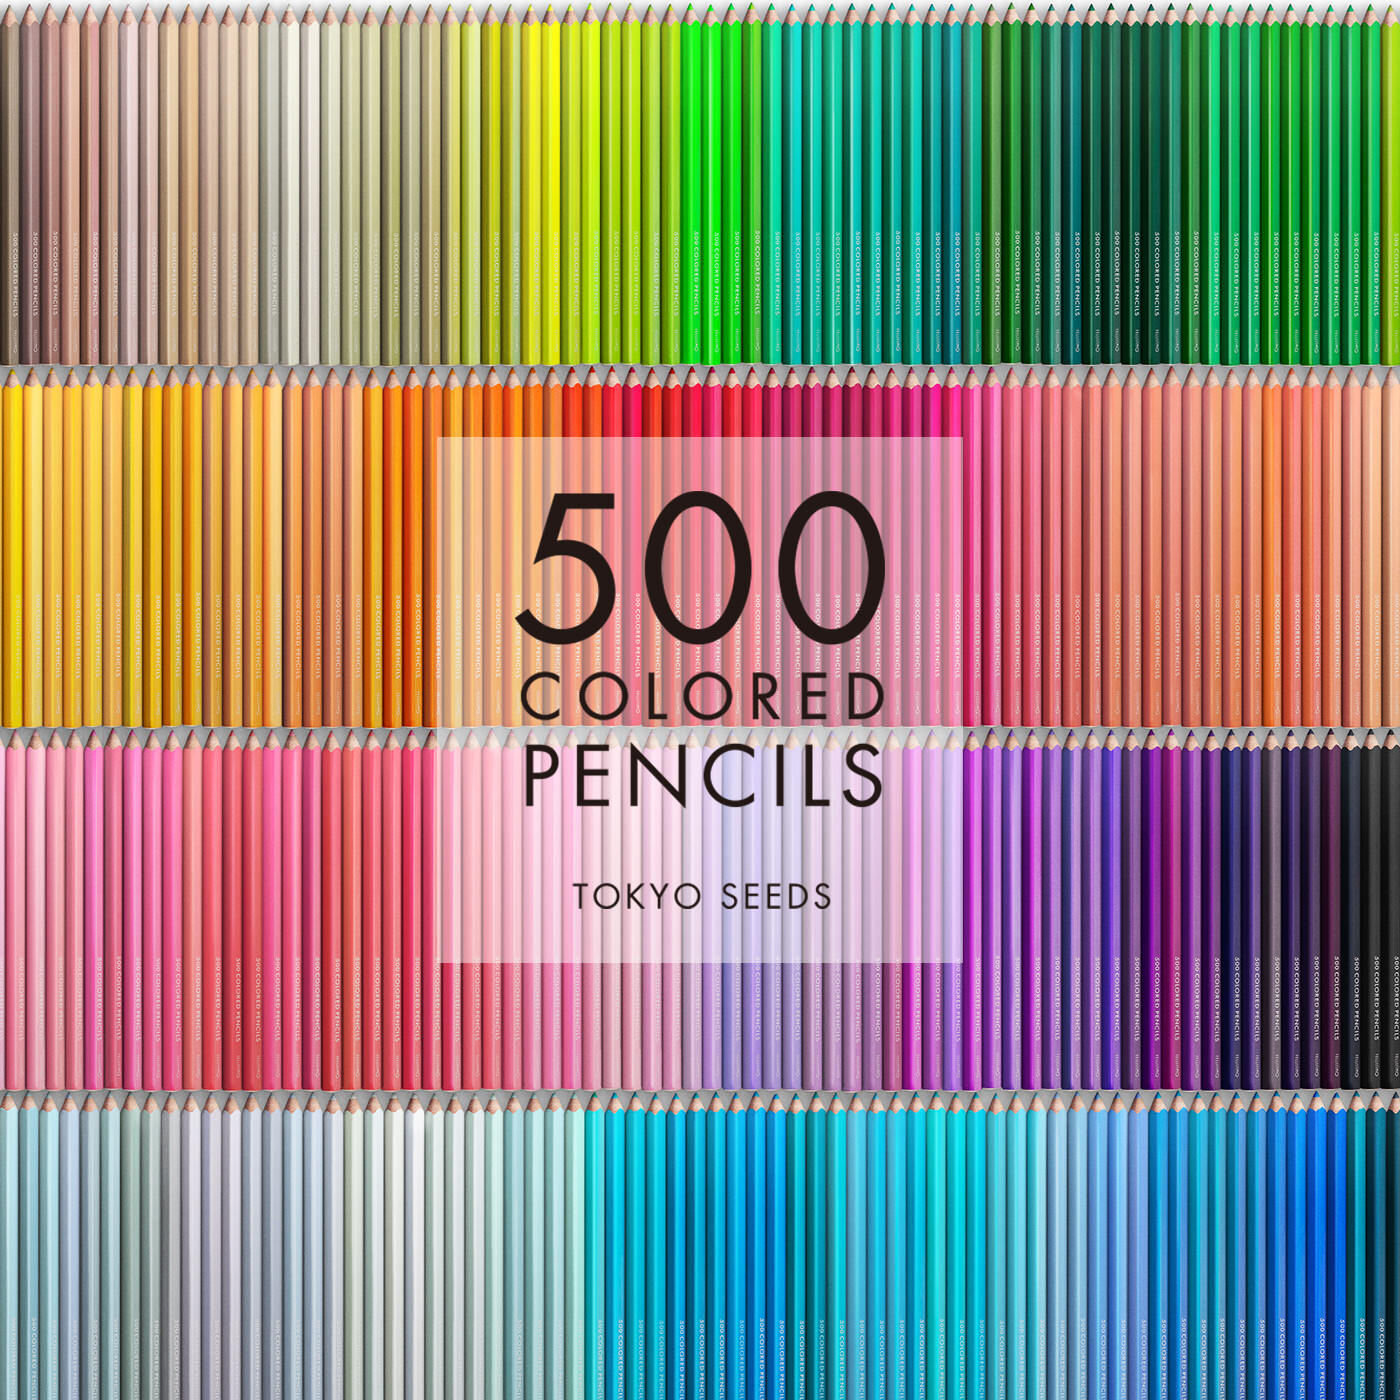 Real Stock|【187/500 DRIED LAVENDER】500色の色えんぴつ TOKYO SEEDS|1992年、世界初の「500色」という膨大な色数の色えんぴつが誕生して以来、その販売数は発売当初から合わせると、世界55ヵ国10万セット以上。今回、メイド・イン・ジャパンにこだわり、すべてが新しく生まれ変わって登場しました。